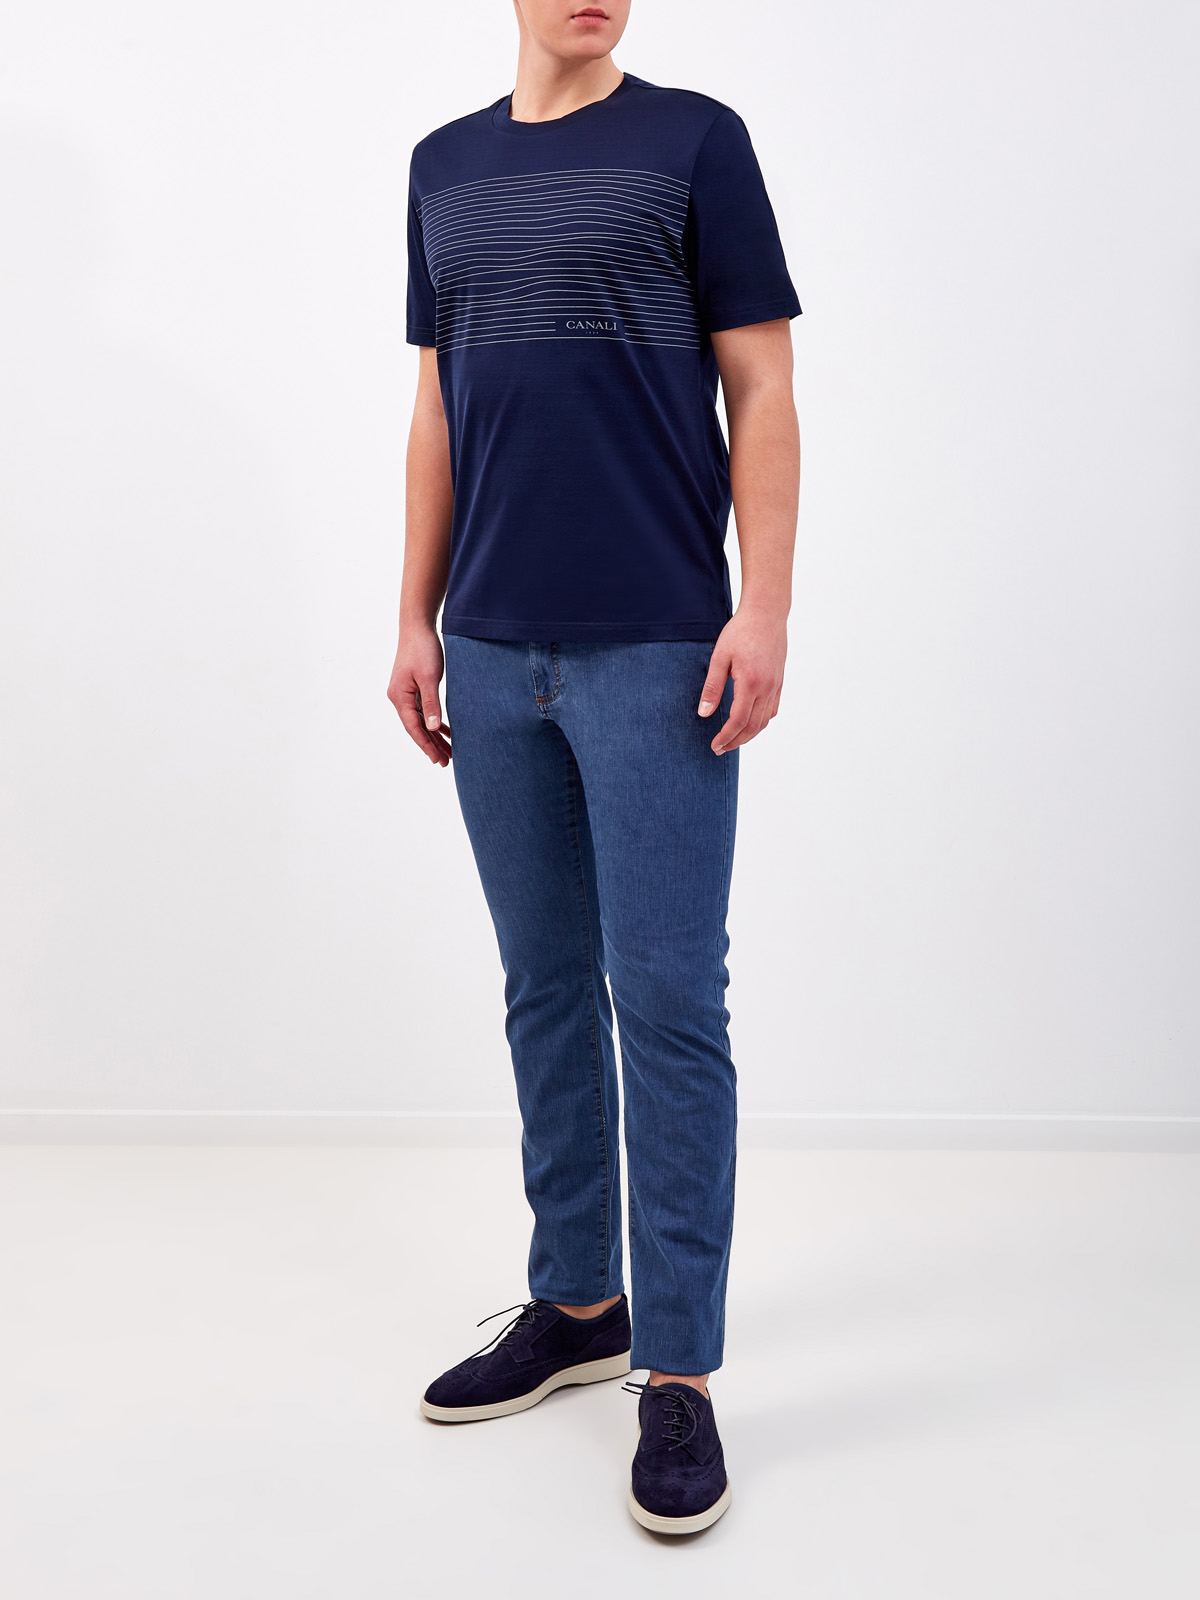 Хлопковая футболка с асимметричным принтом-аппликацией CANALI, цвет синий, размер 52;54;56;58;60;50 - фото 2